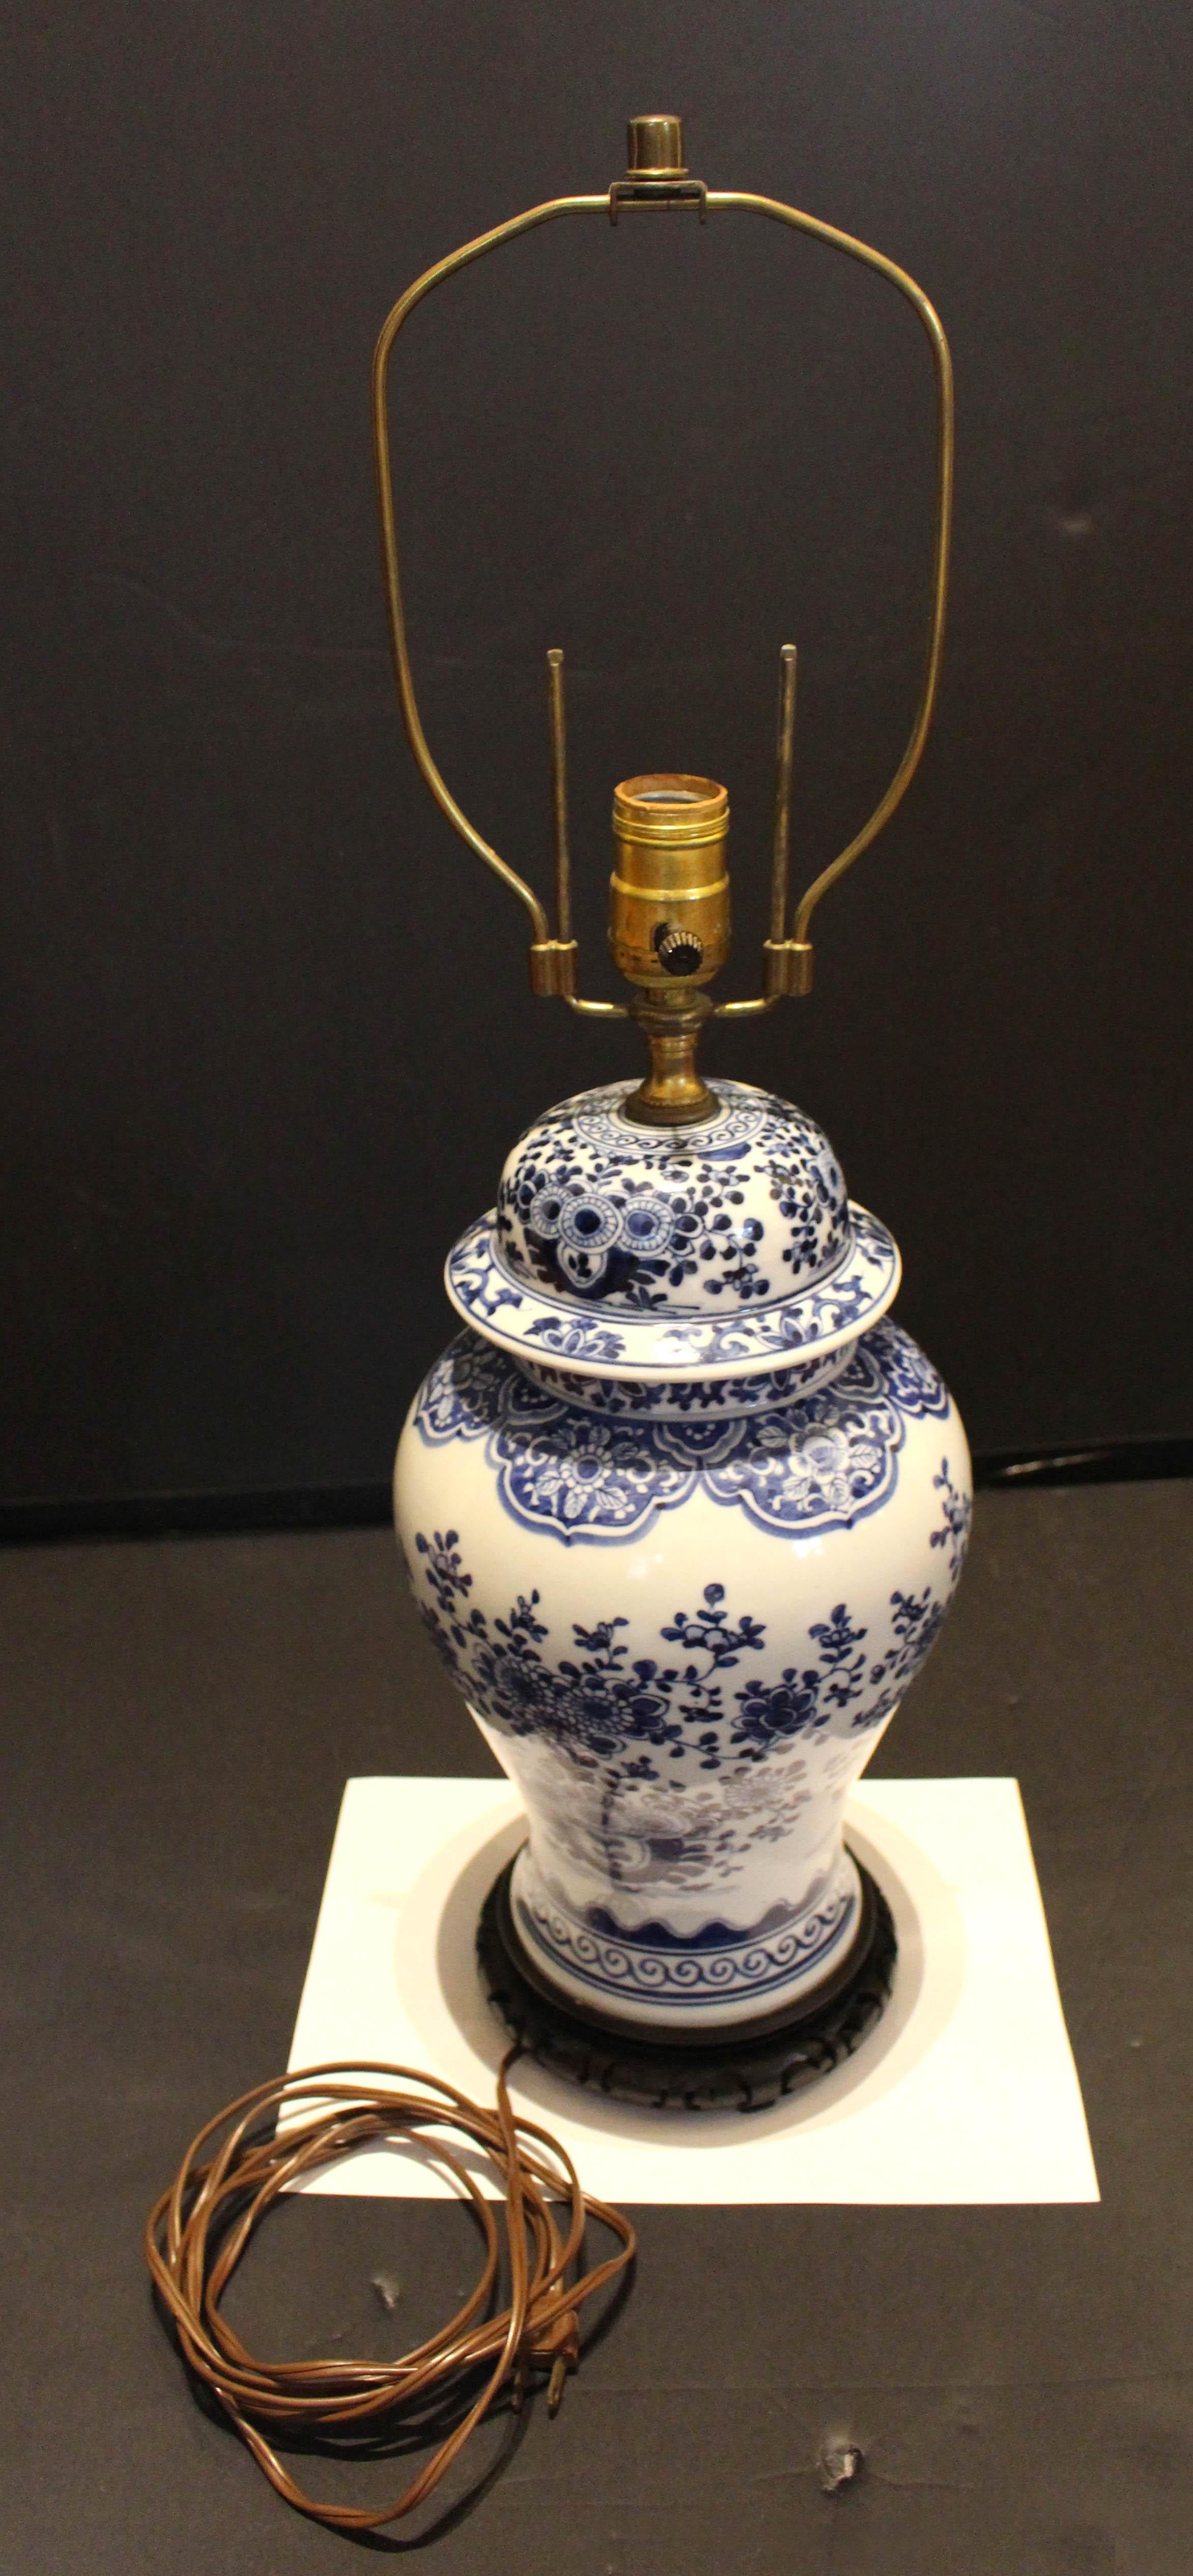 Bedeckte Ingwerlampe aus dem späten 19. Jahrhundert, chinesisch. Blaues und weißes Porzellan. Wahrscheinlich Mitte des 20. Jahrhunderts zu einer Lampe verarbeitet. Attraktive Balusterform, gut verziert mit großen, blühenden Bäumen und